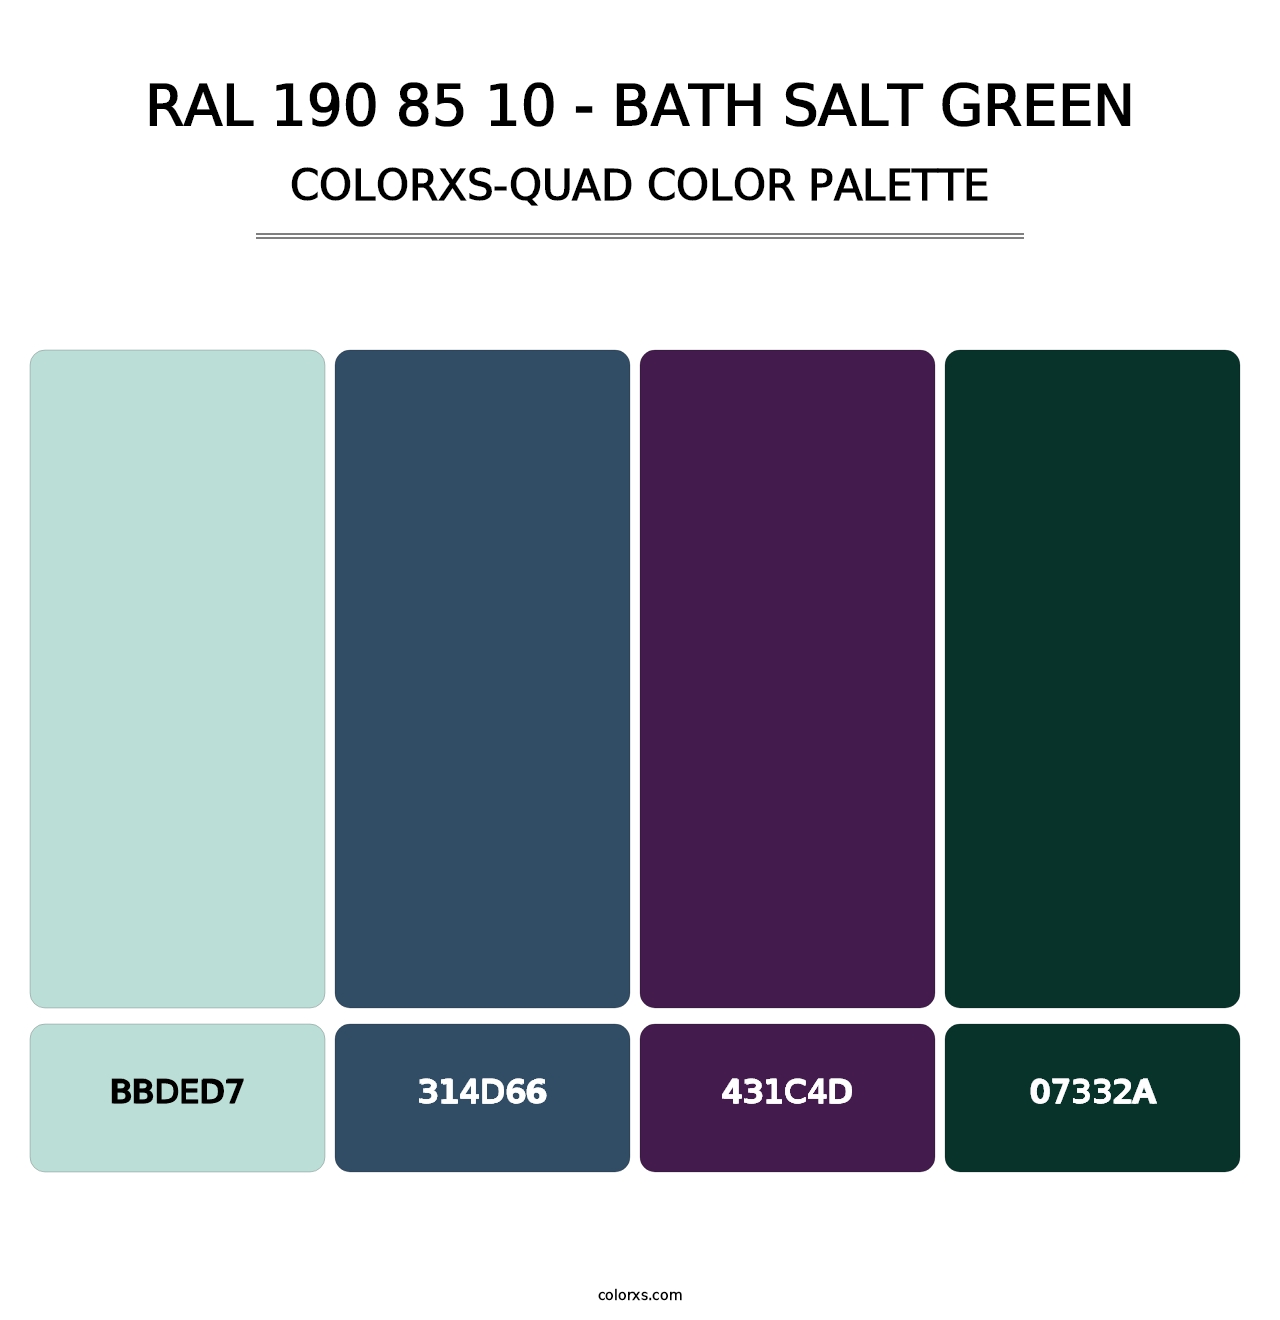 RAL 190 85 10 - Bath Salt Green - Colorxs Quad Palette